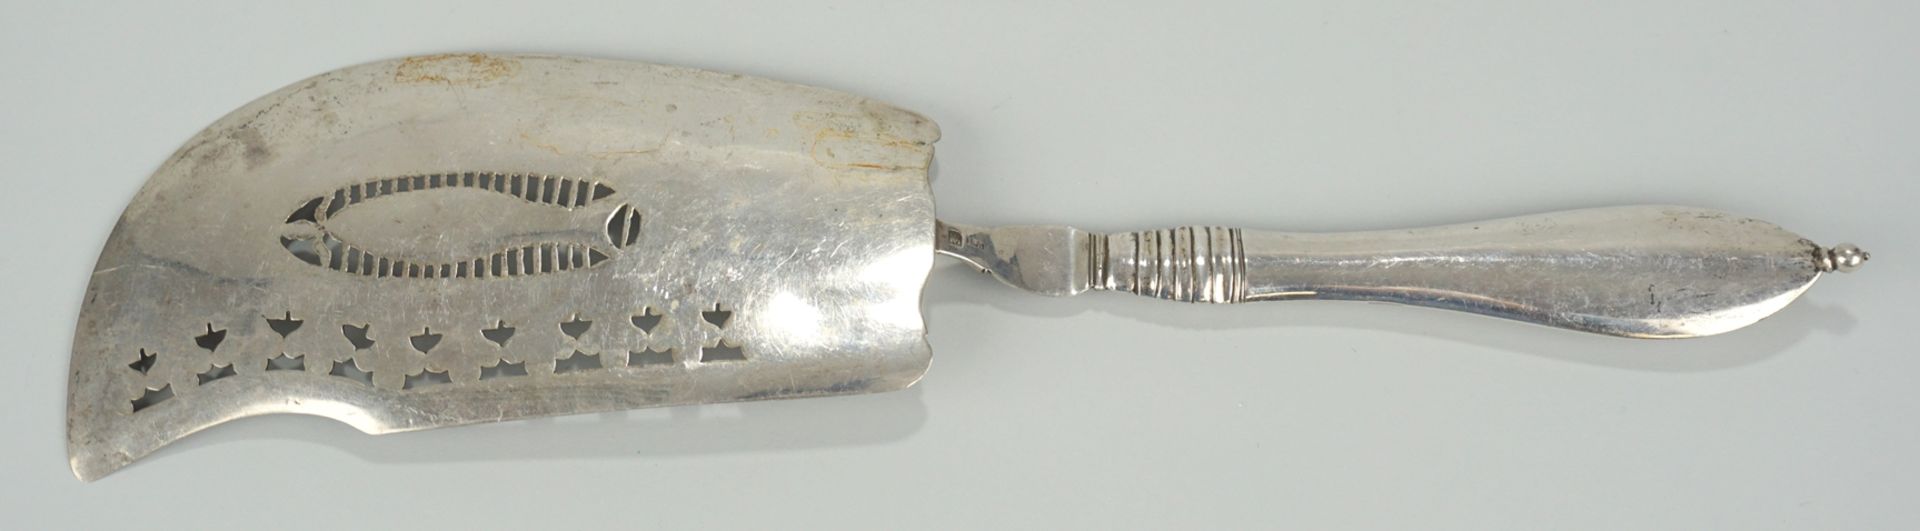 Fischheber, min. 800er Silber, 1. Hälfte 19.Jh. - Bild 2 aus 2